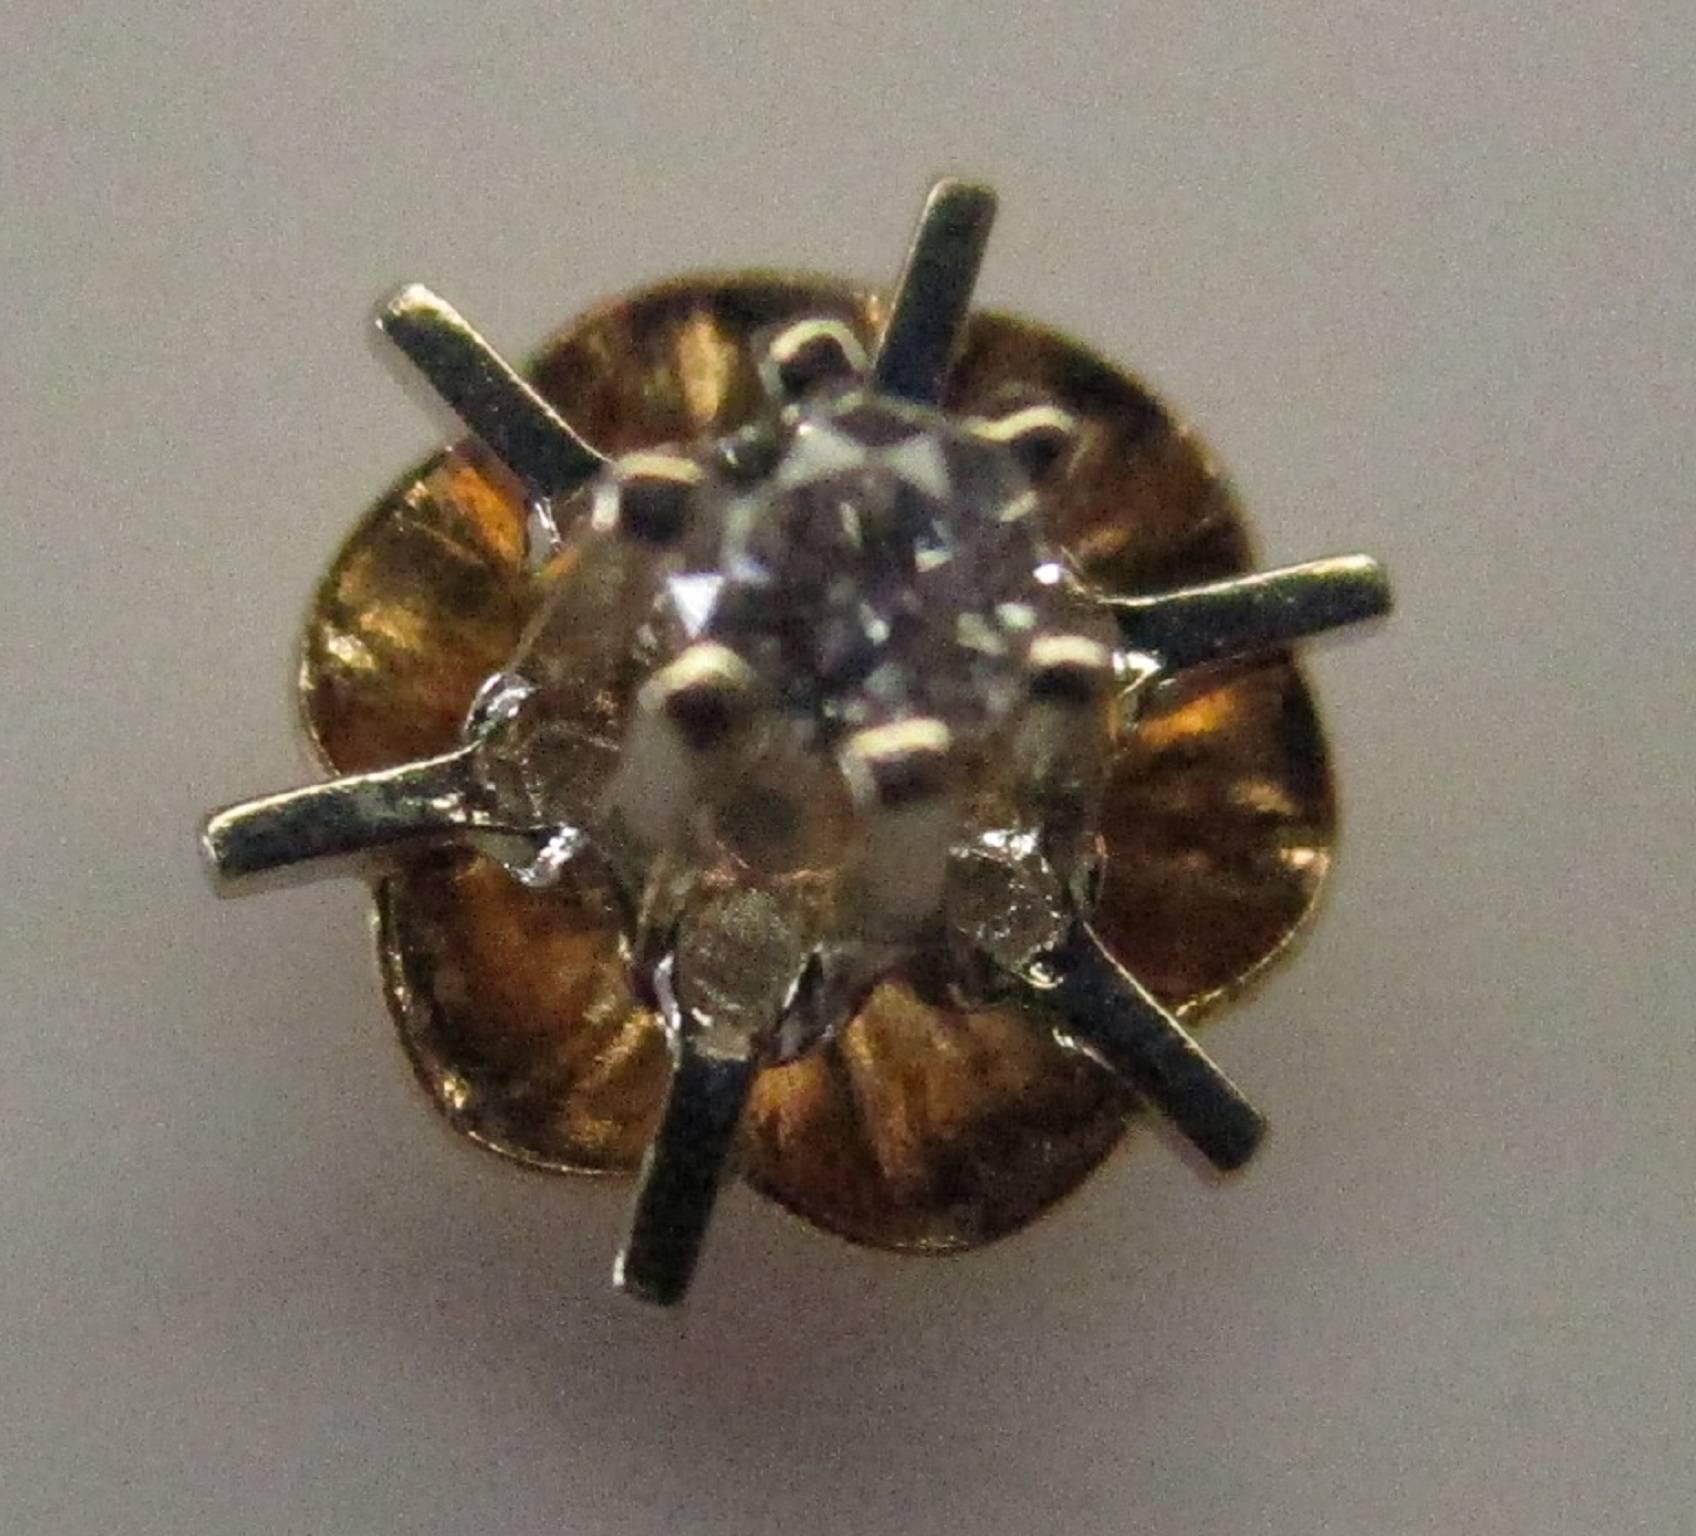 buttercup diamond earrings